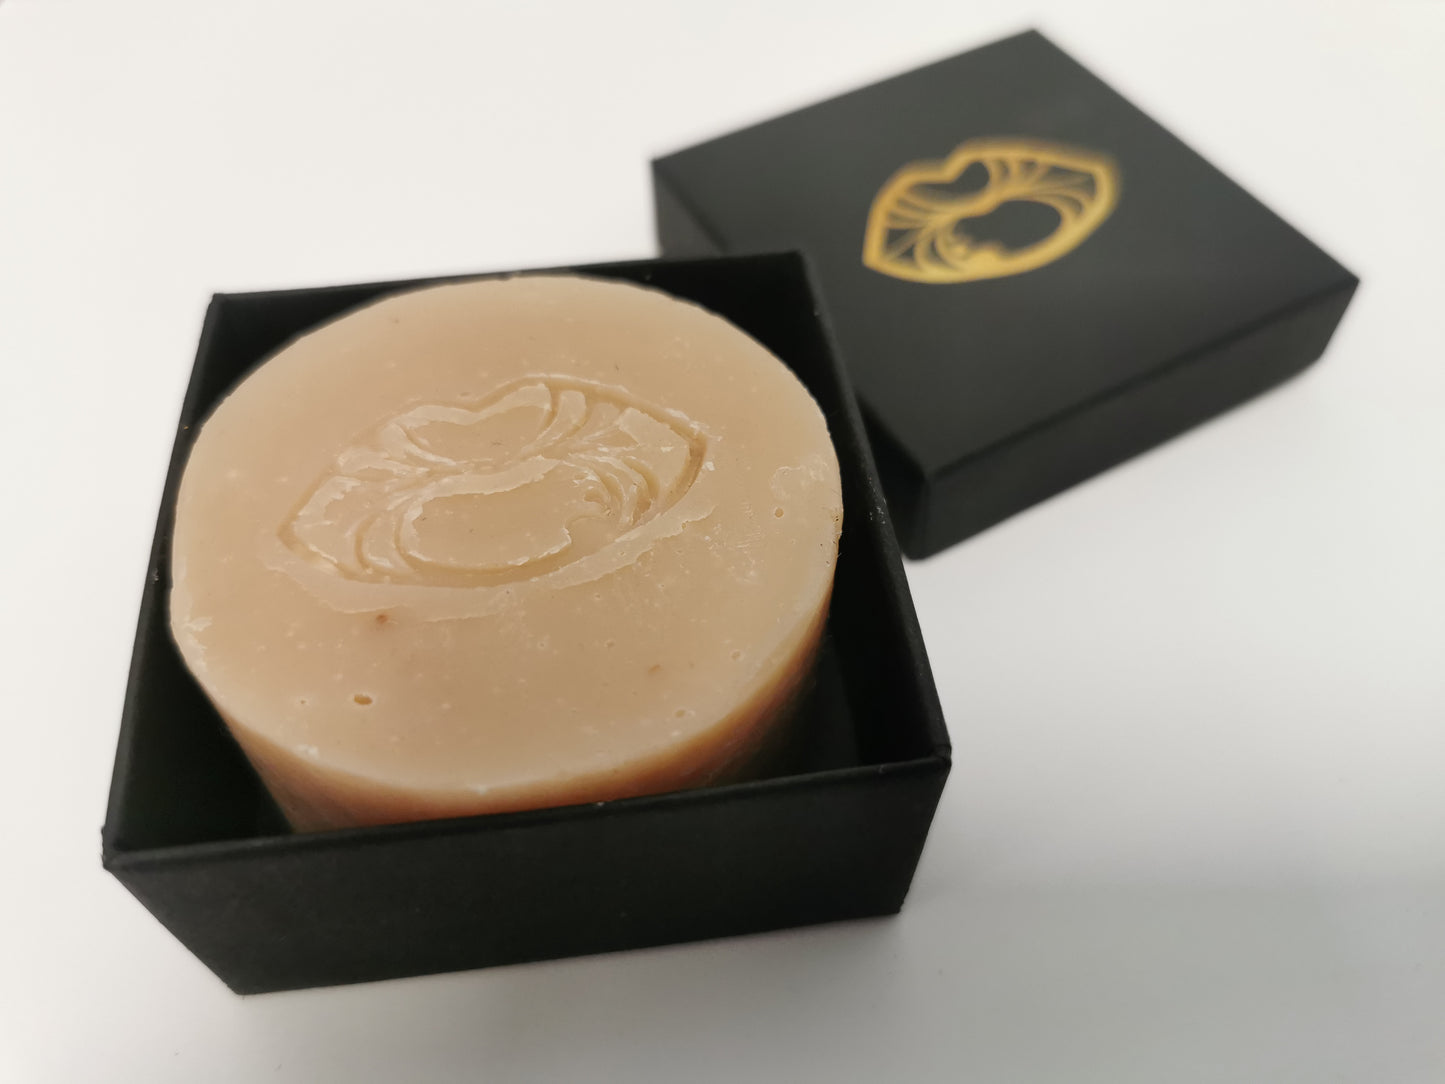 Luxury Soap - Handmade in Wales